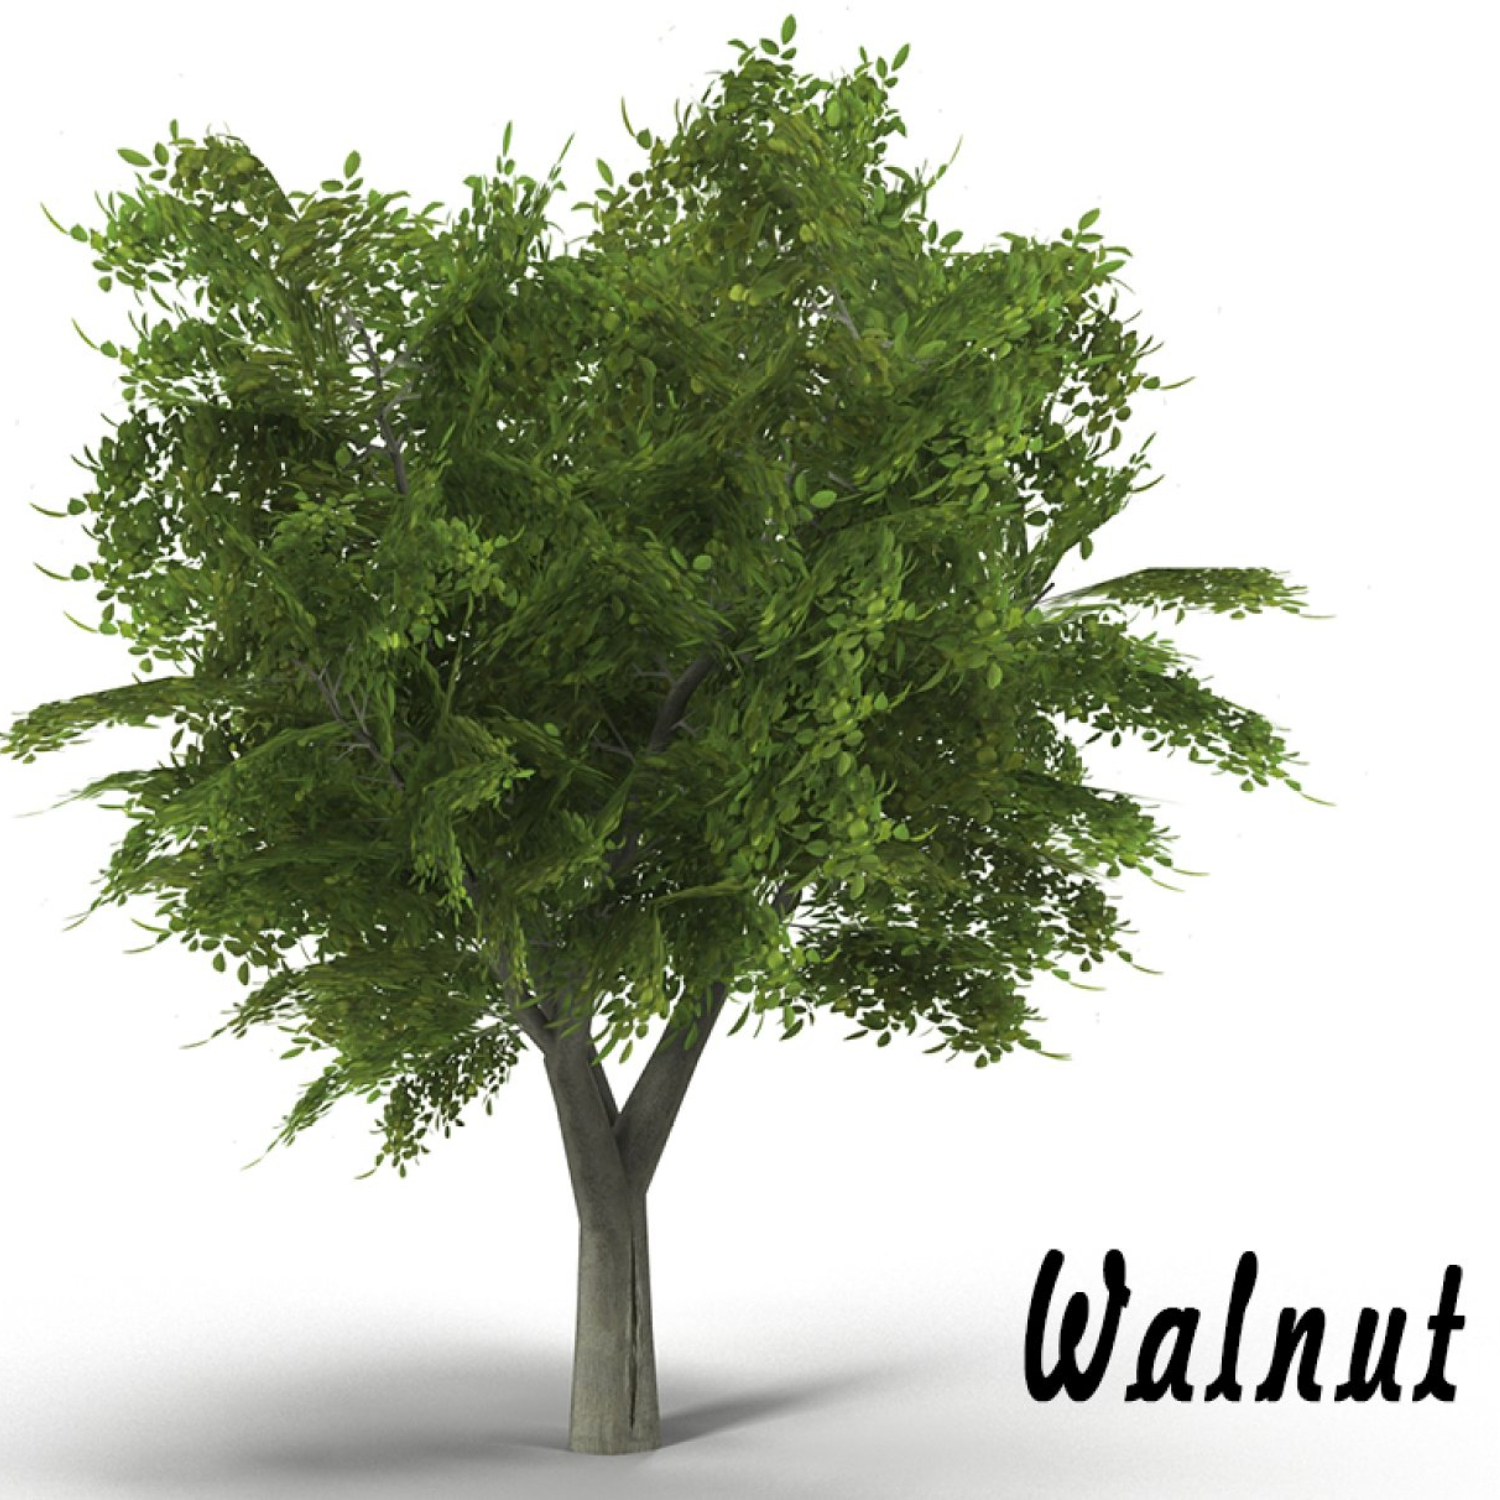 Walnut Tree.